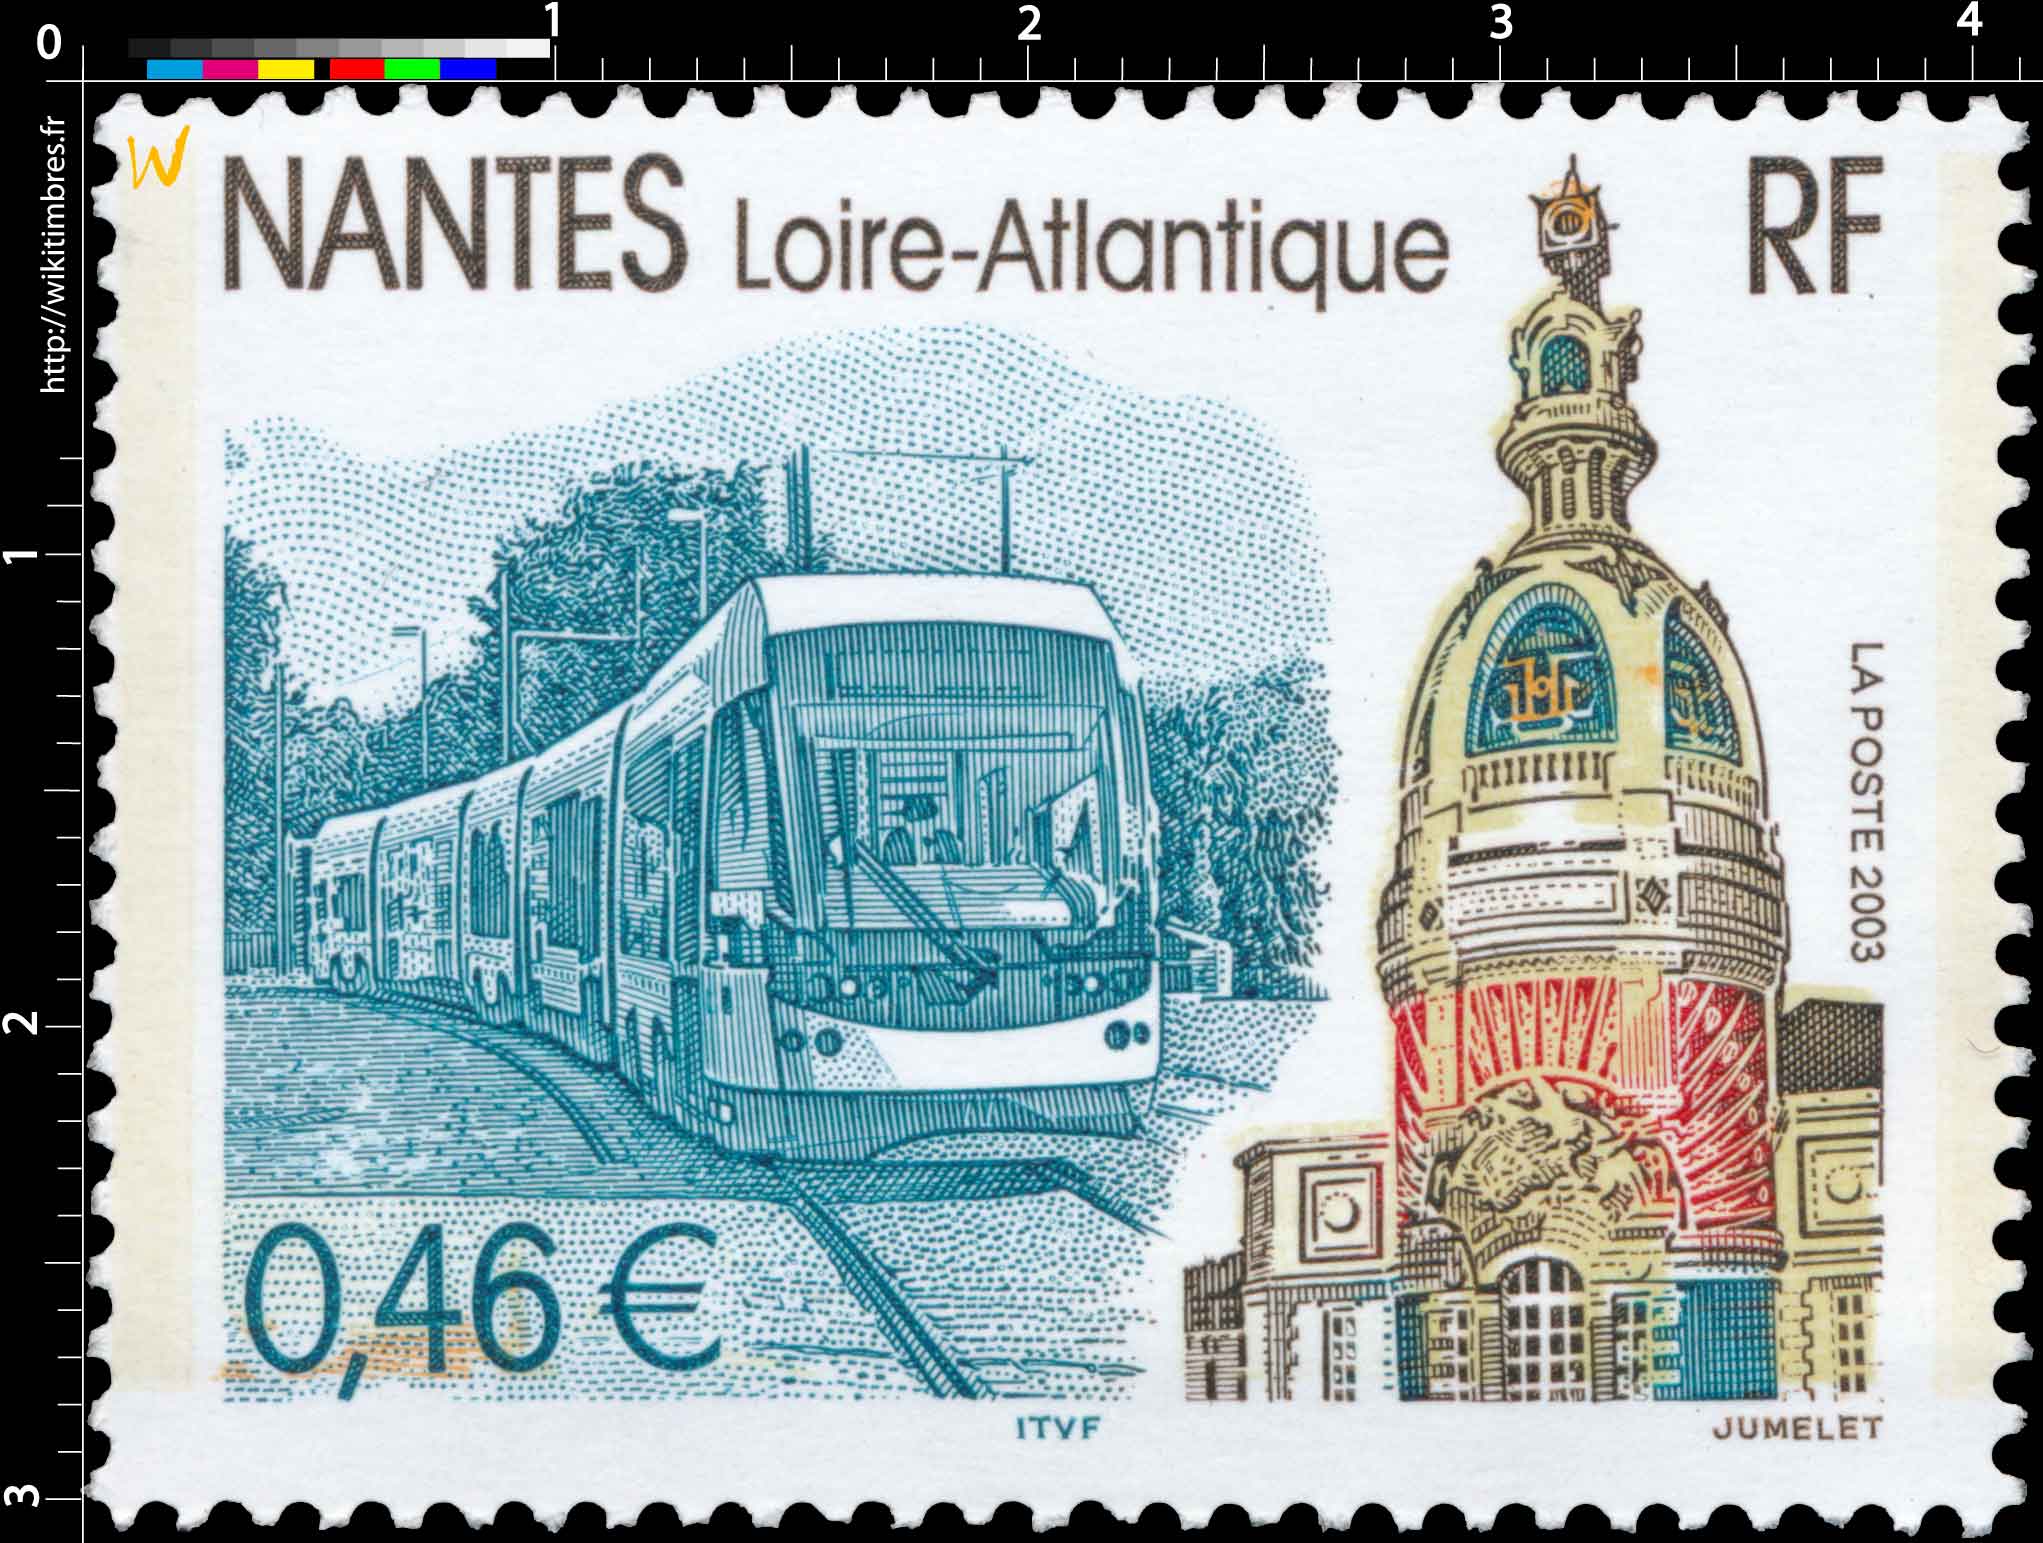 2003 NANTES Loire-Atlantique